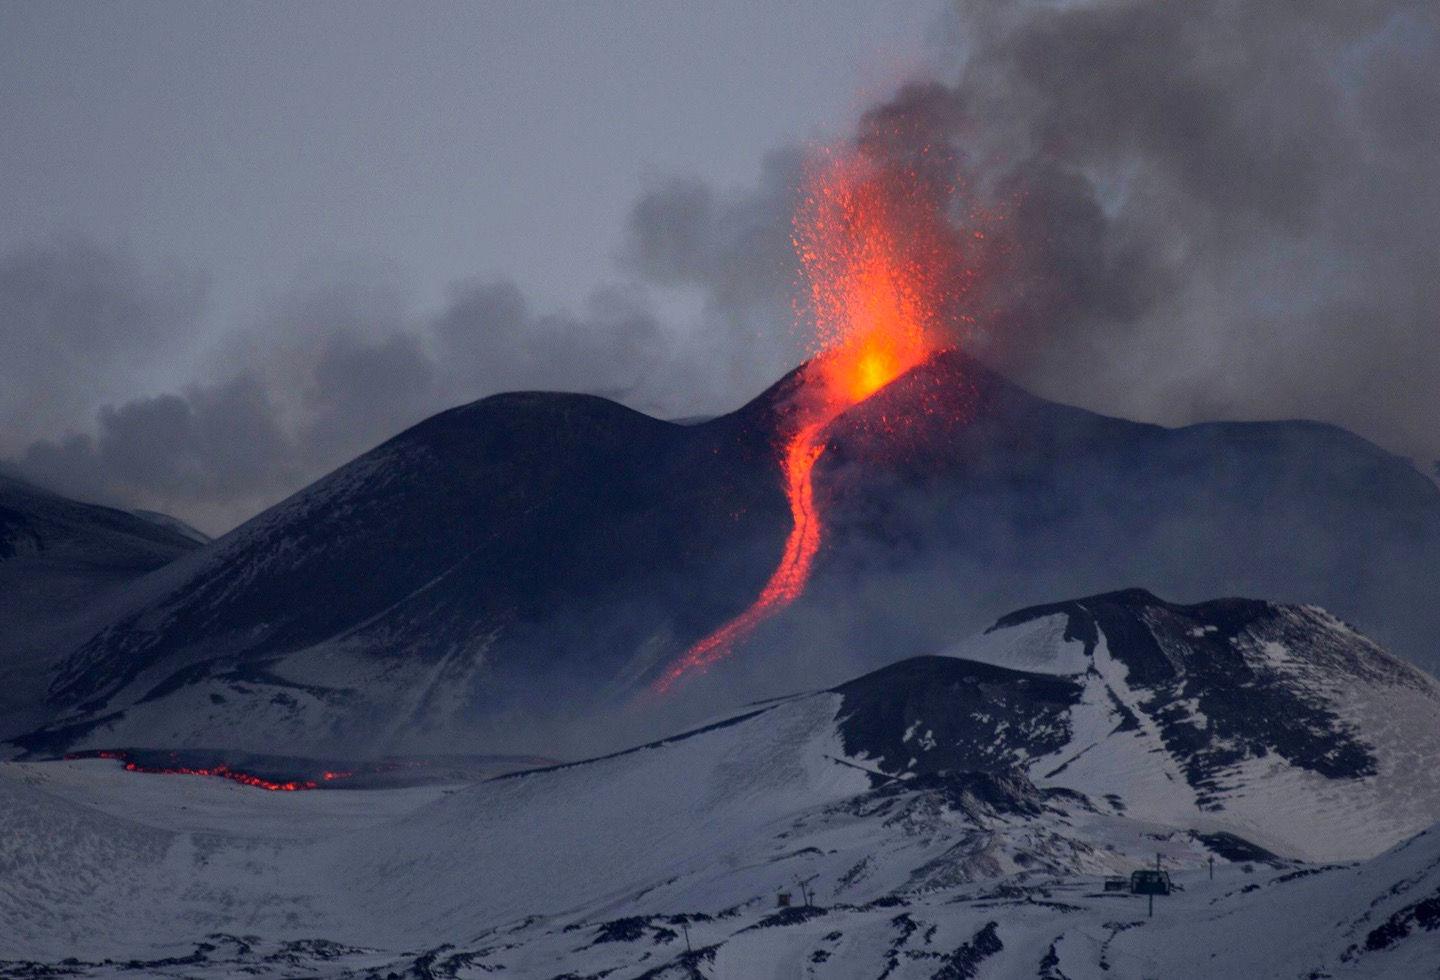 这个萌萌哒的火山,叫做布斯卡,是意大利出名的景点,大多数人不敢登顶